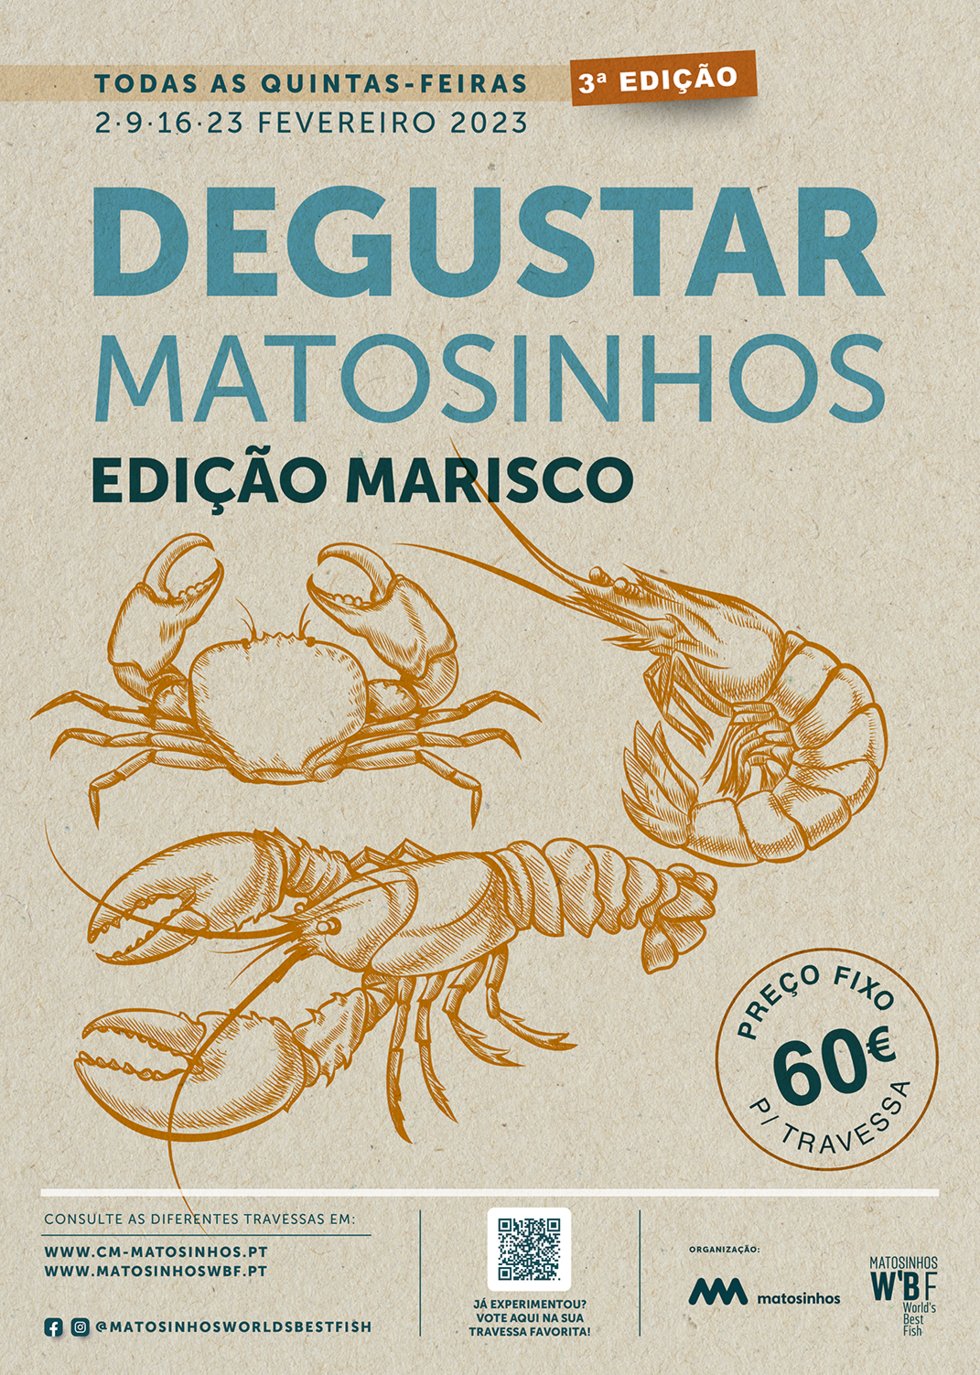 Degustar Matosinhos – Edição Marisco